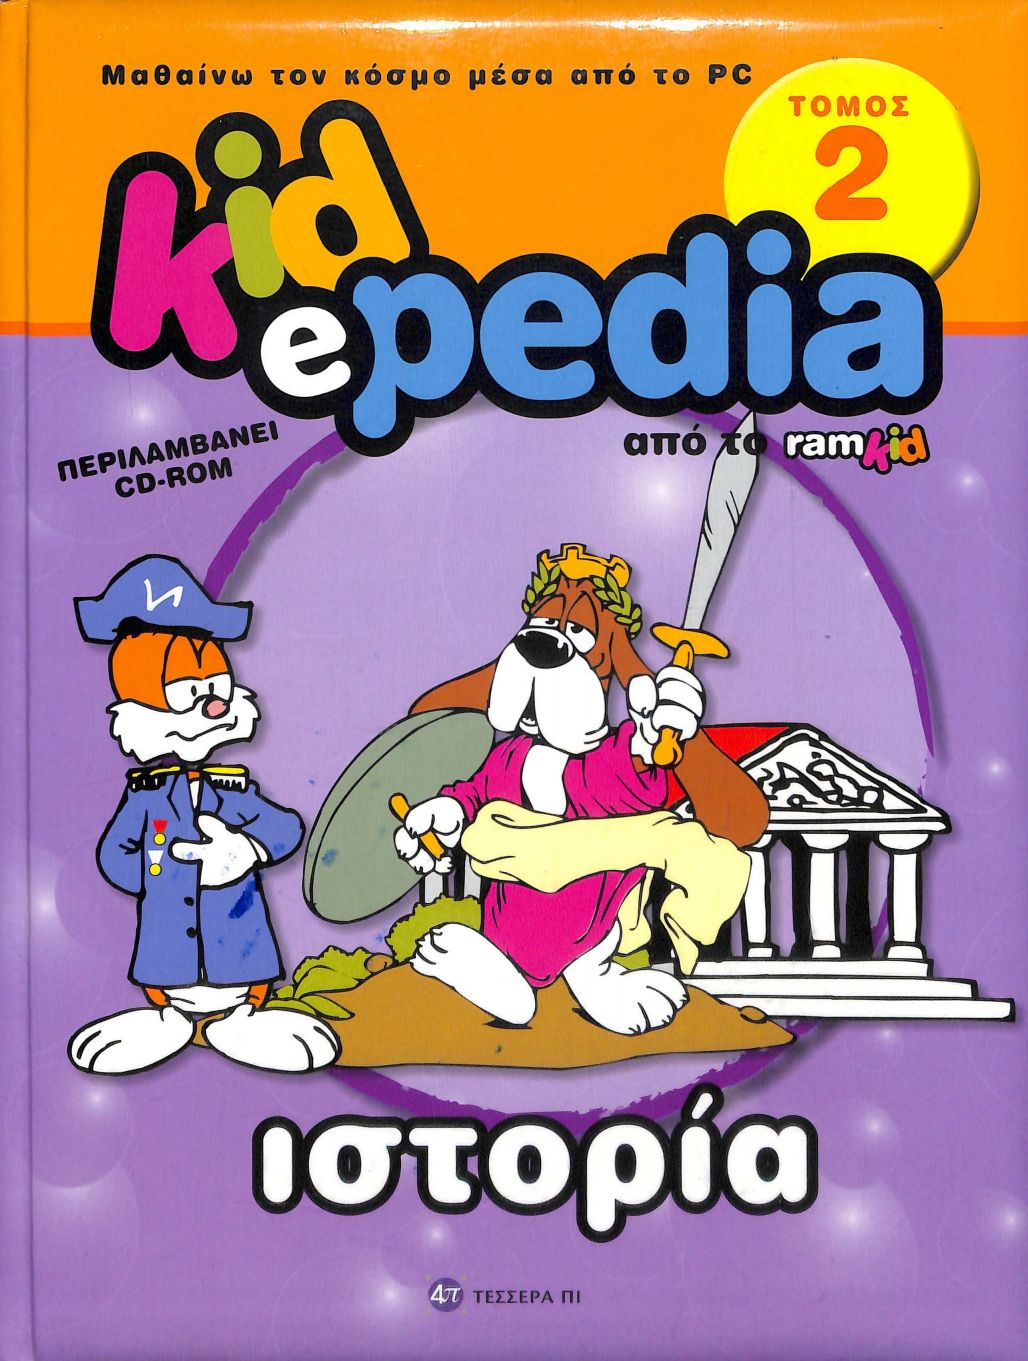 kidepedia